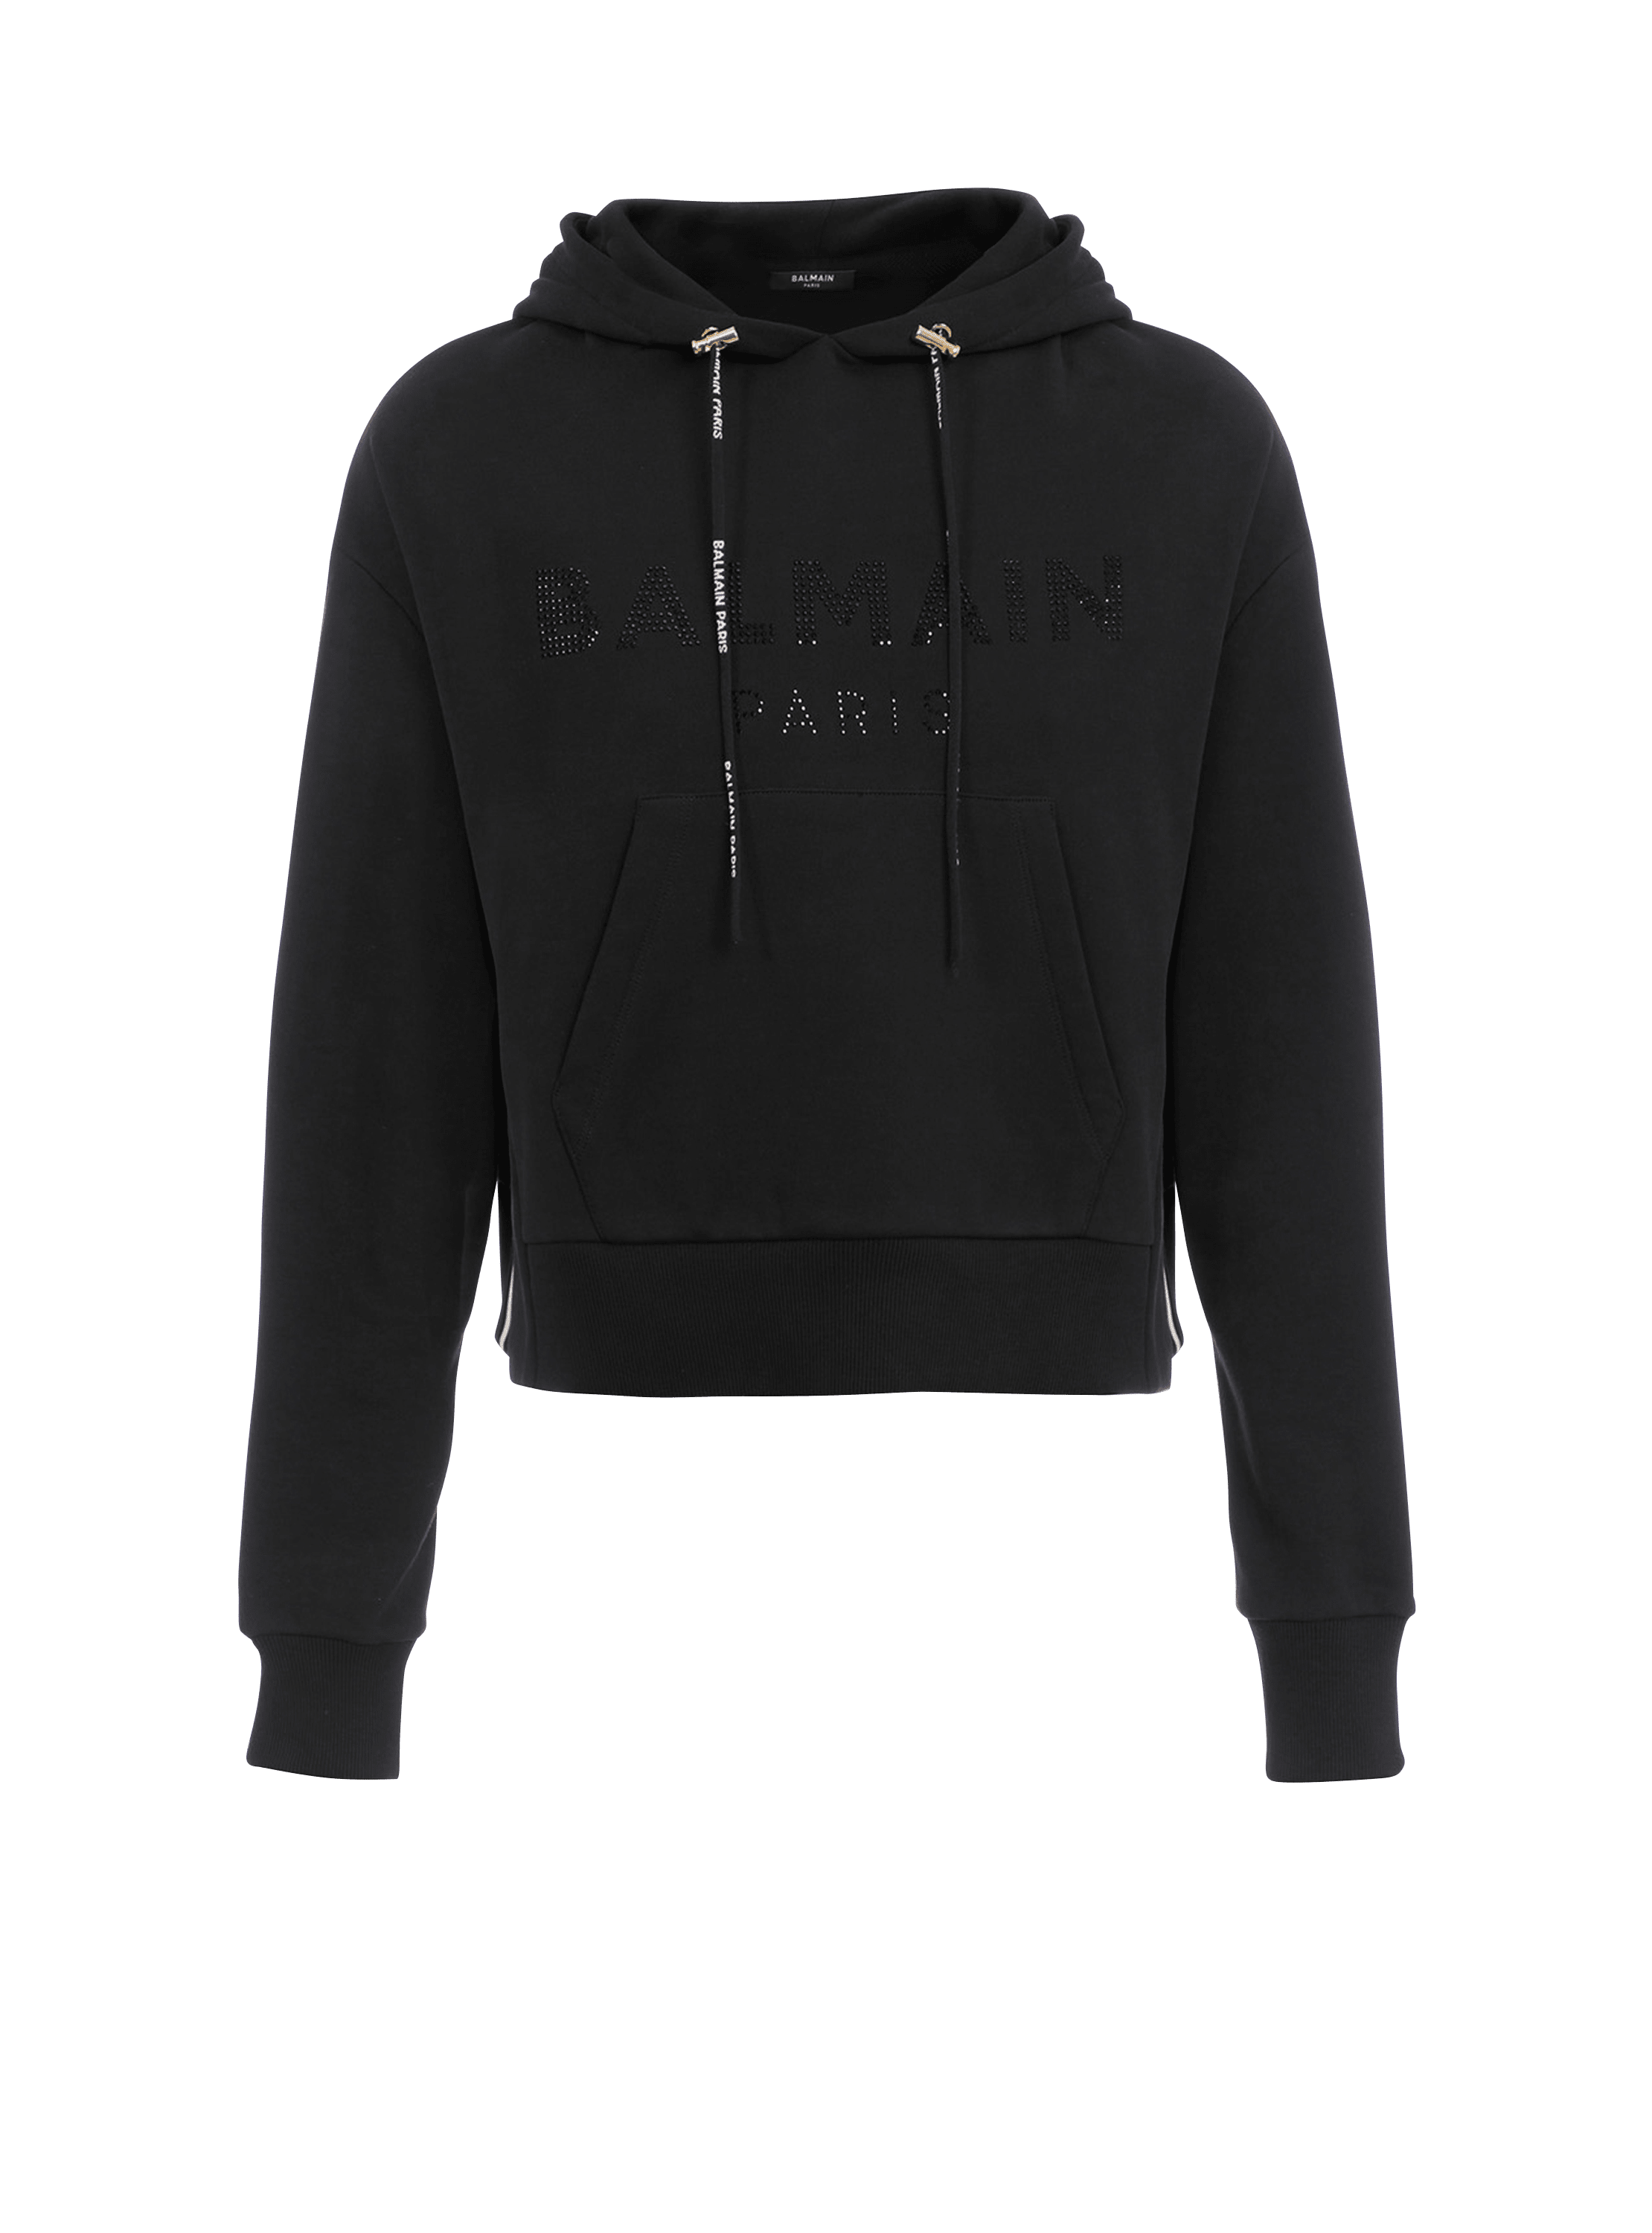 Sweat court en coton éco-design avec logo Balmain strassé, noir, hi-res